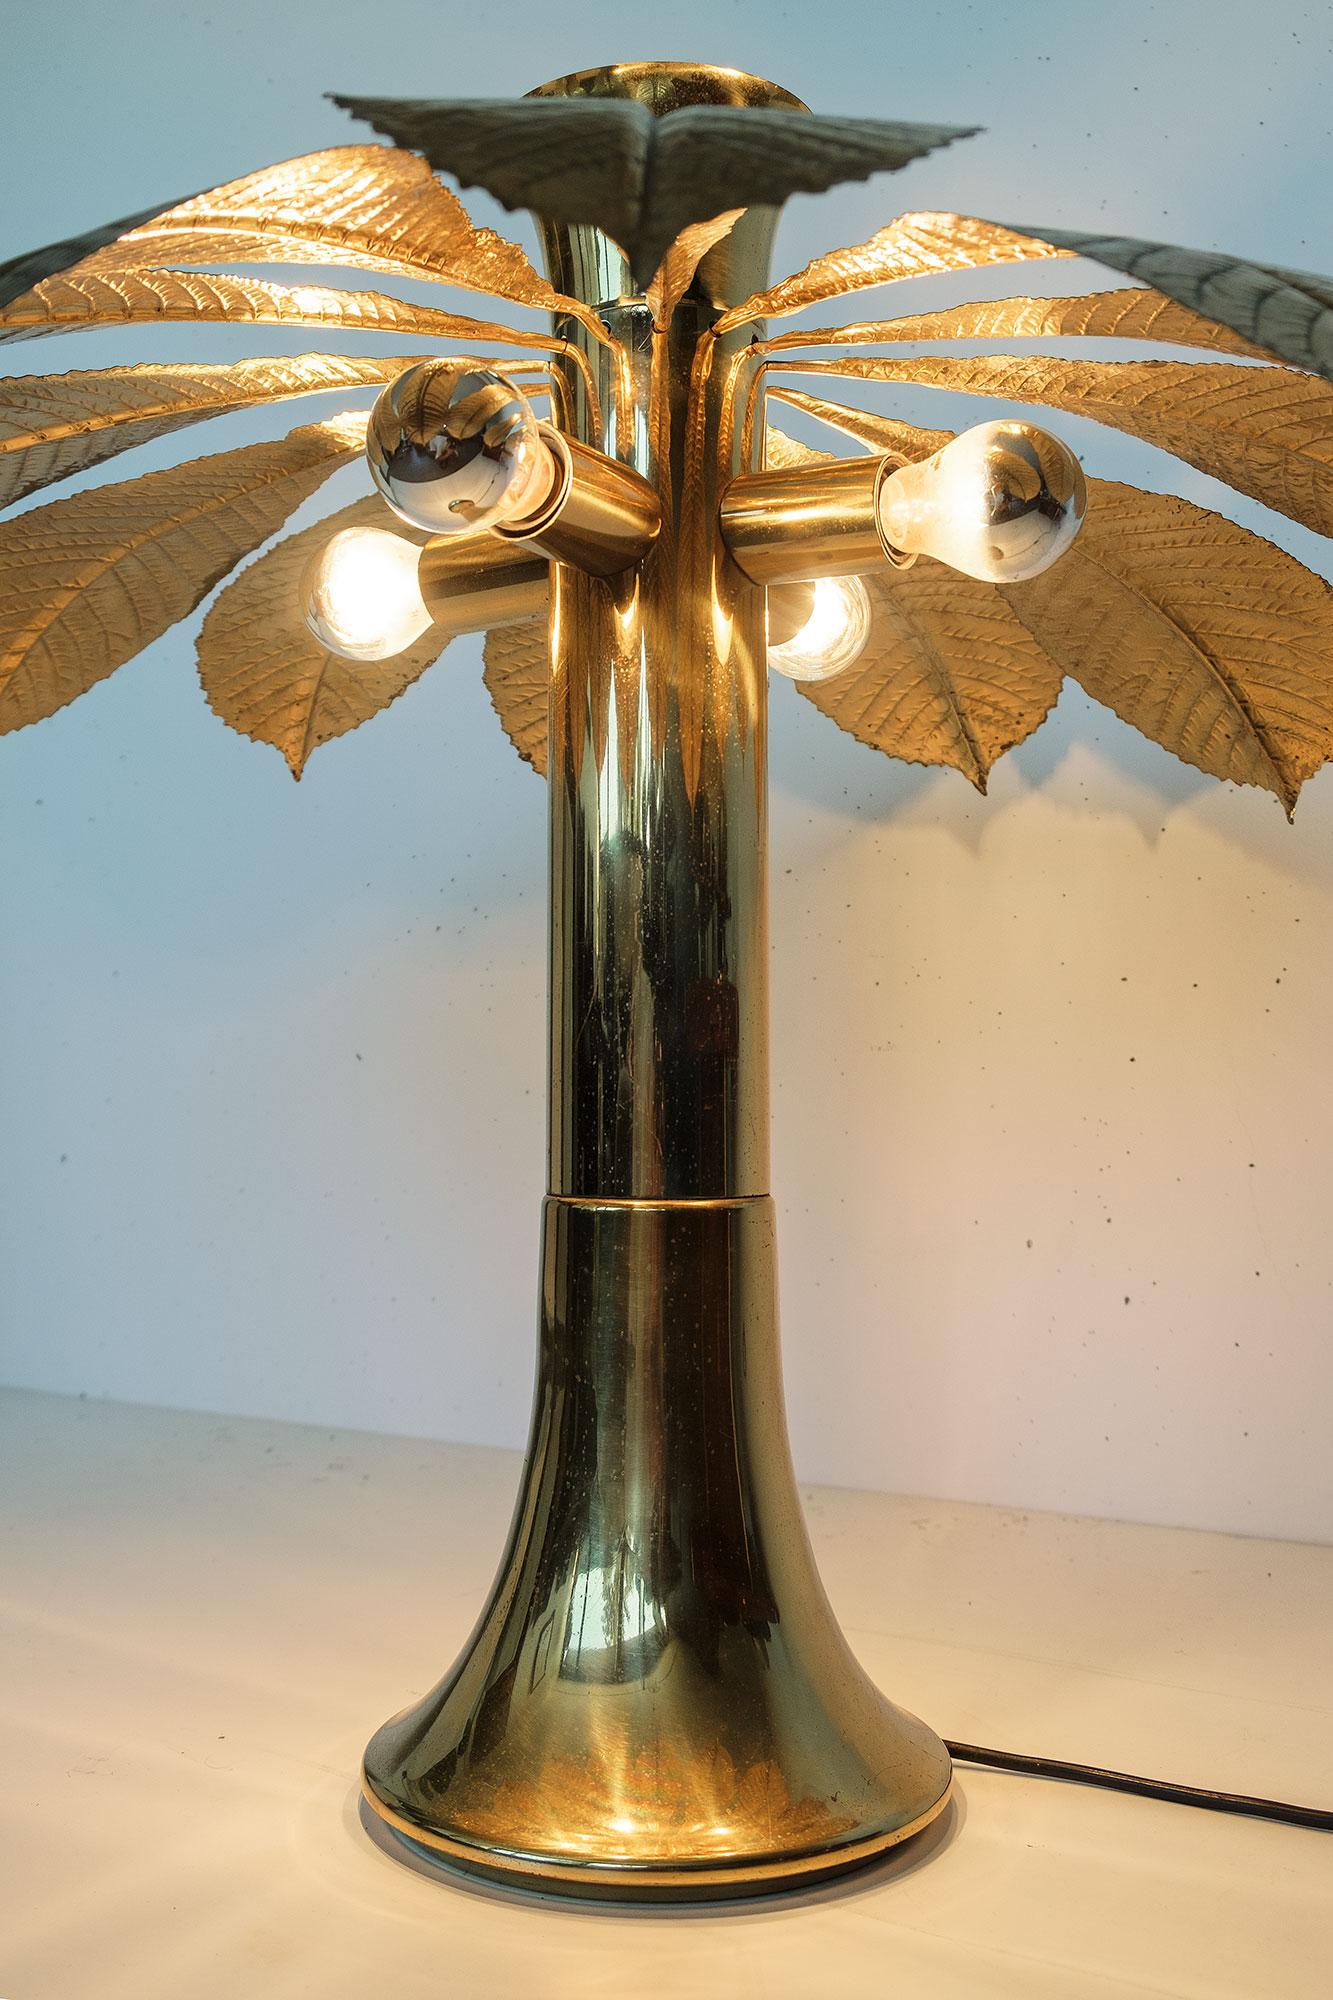 Ippocastano (Chestnut) Brass Lamp by Carlo Giorgi for Bottega Gadda, Milano In Good Condition For Sale In Lugano, TI